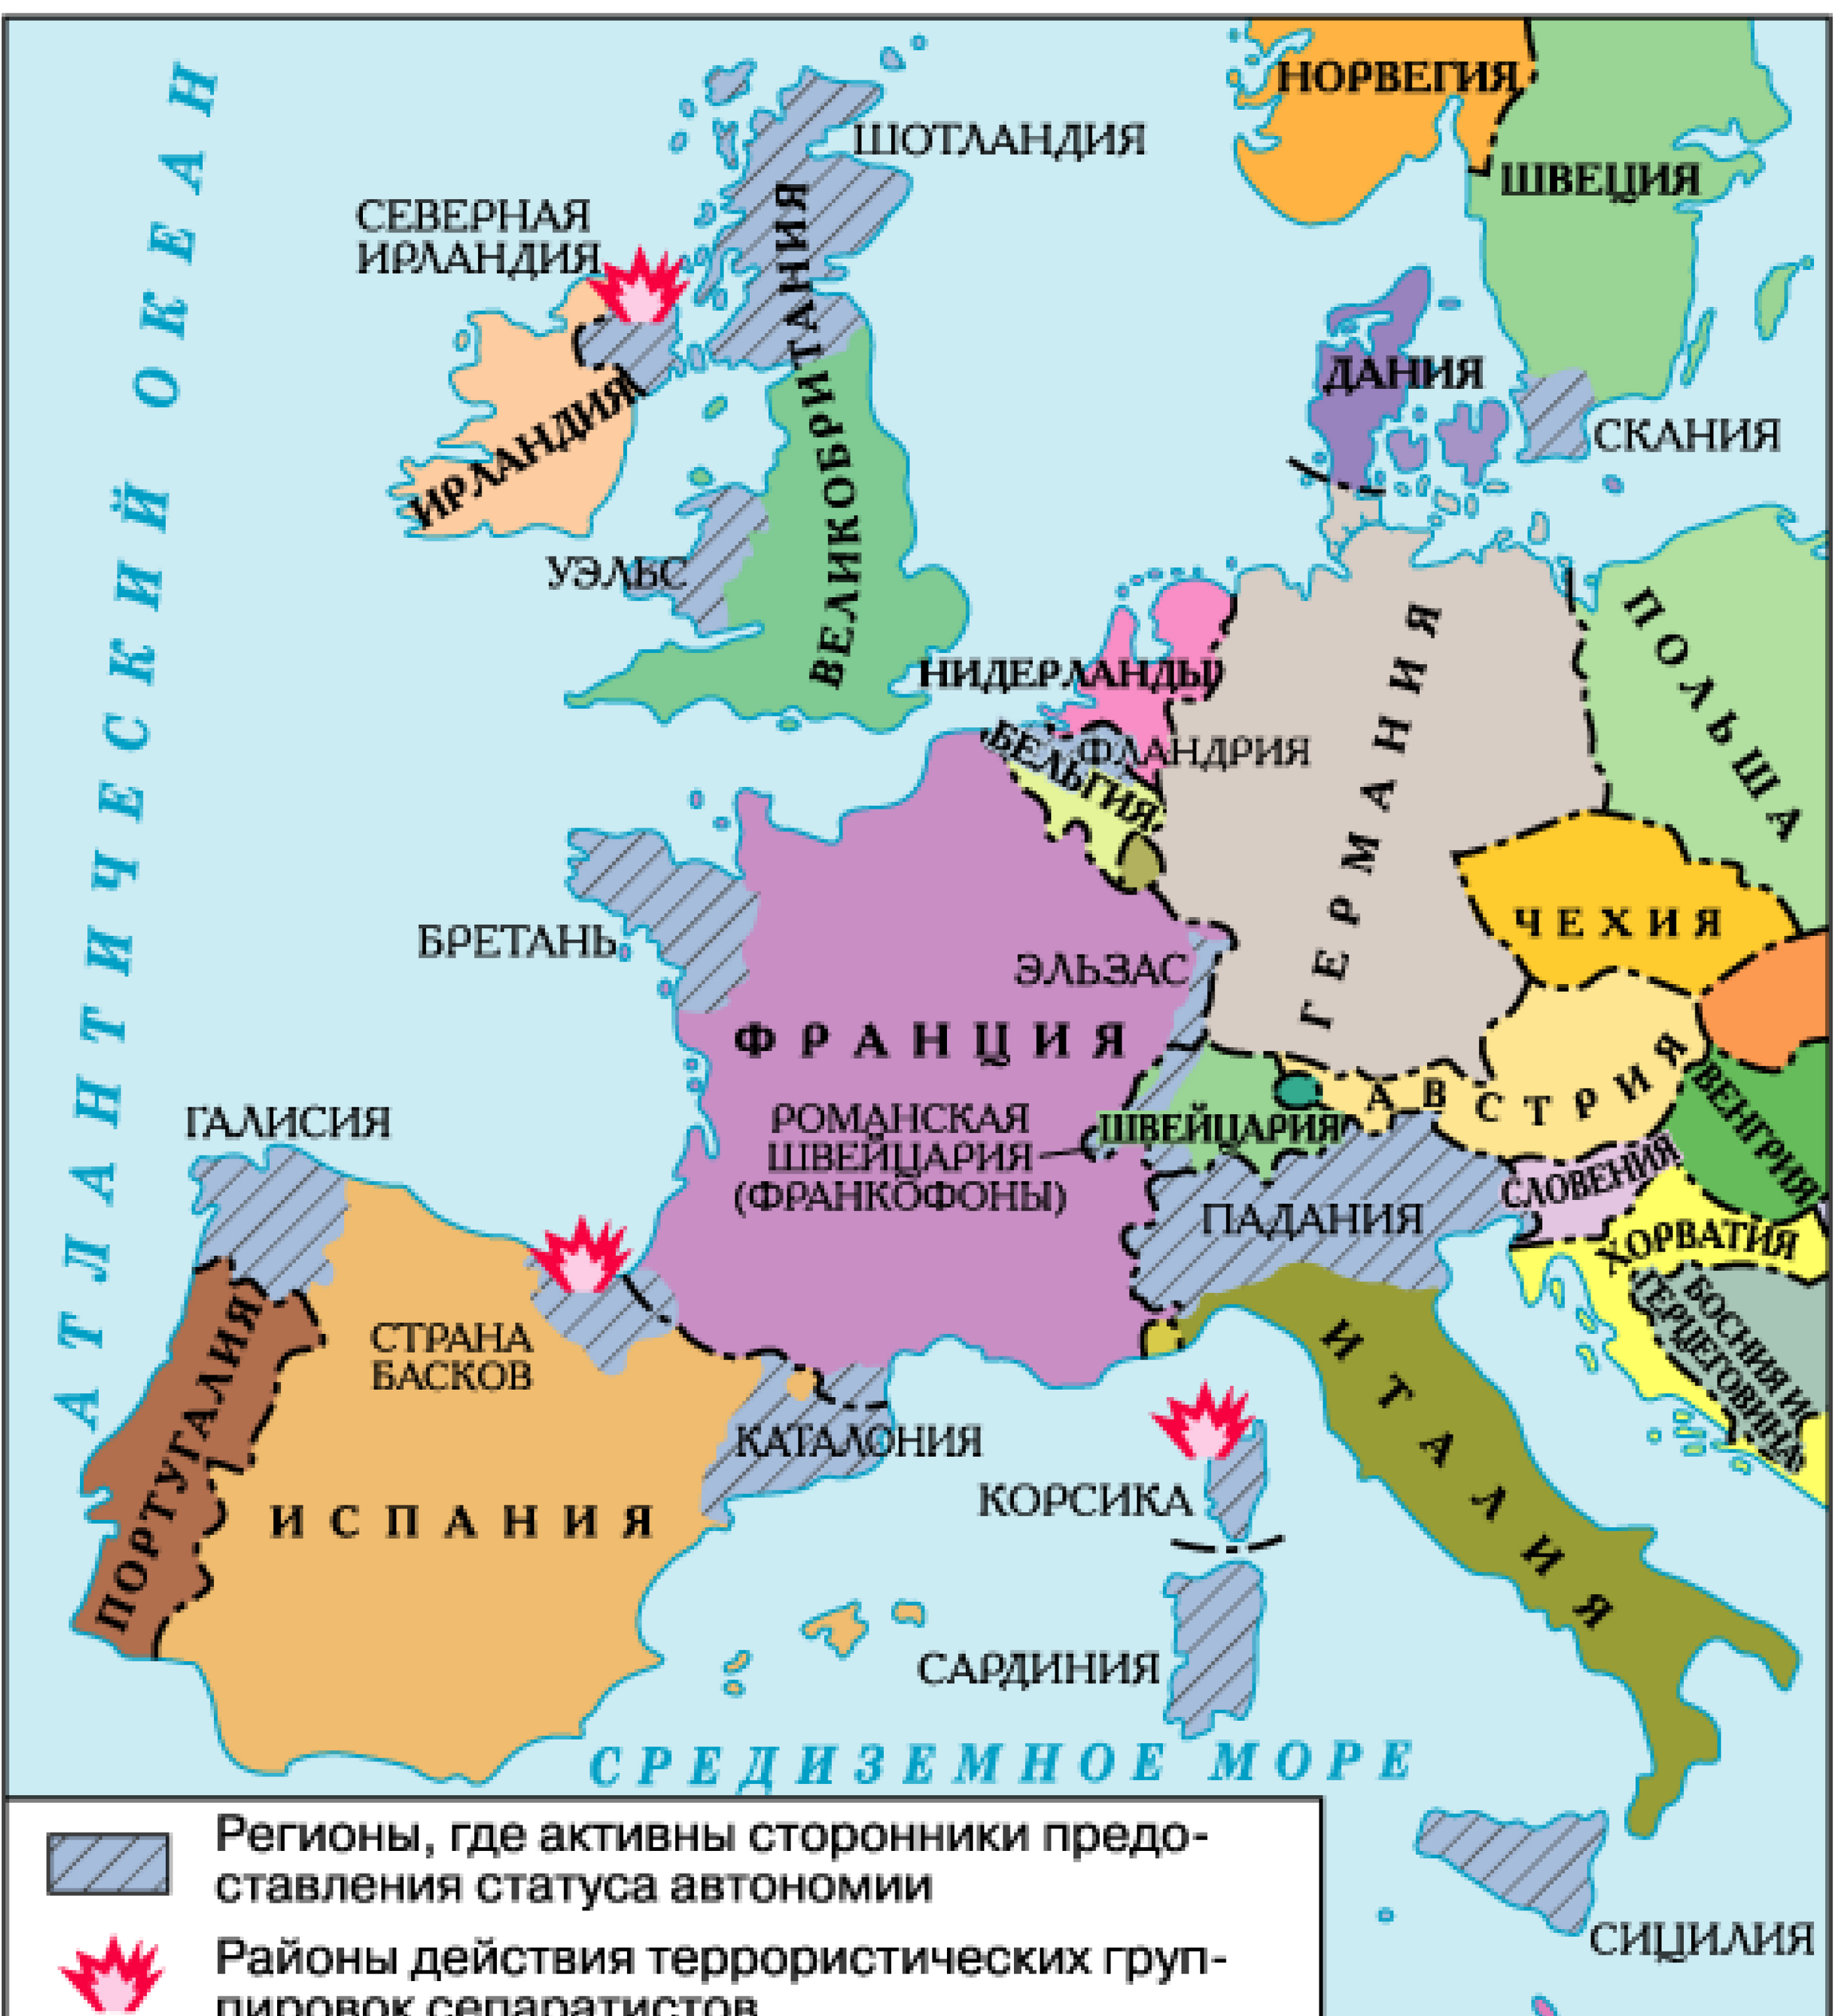 Западная Европа: территории, требующие предоставления независимости (автономии)